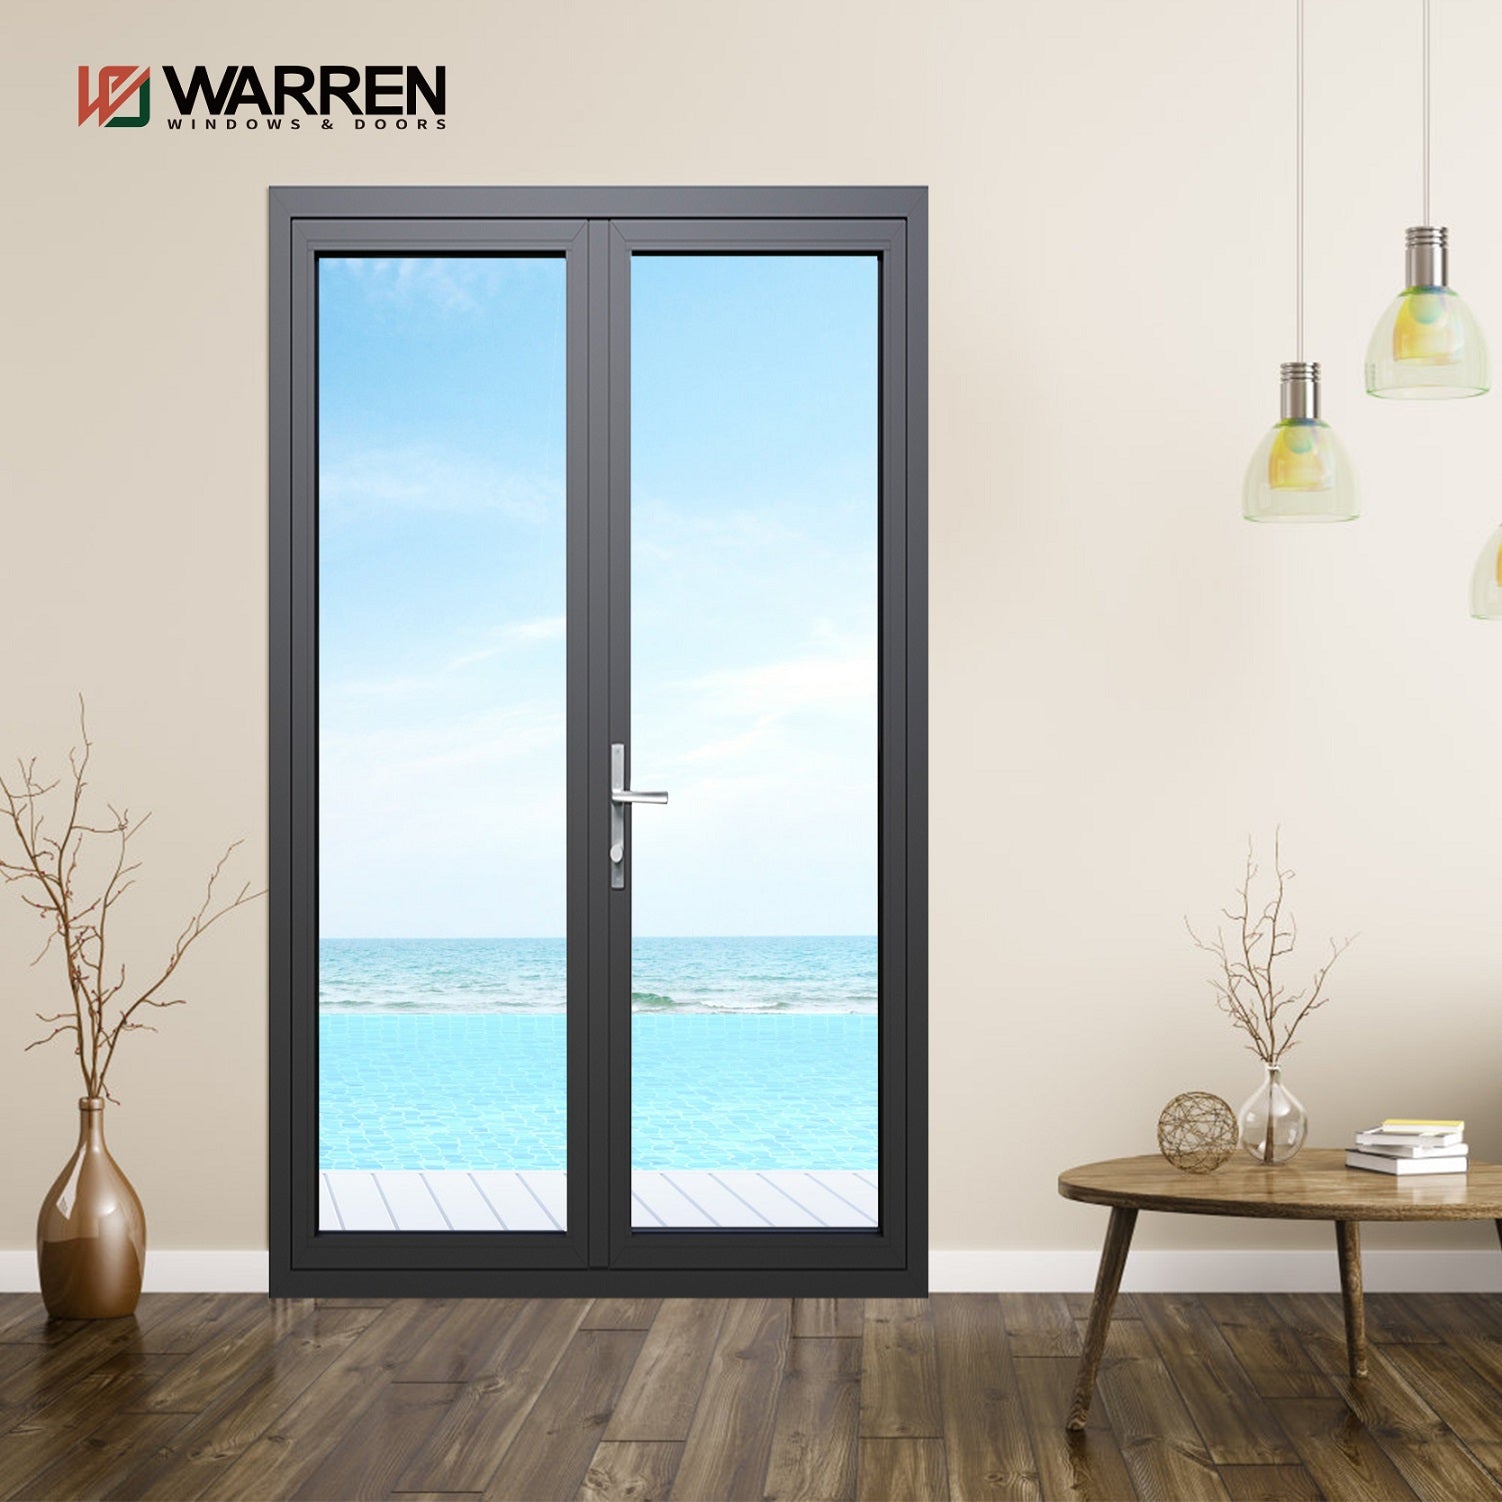 Warren 60x96 Interior French Doors With Double Doors Interior Glass